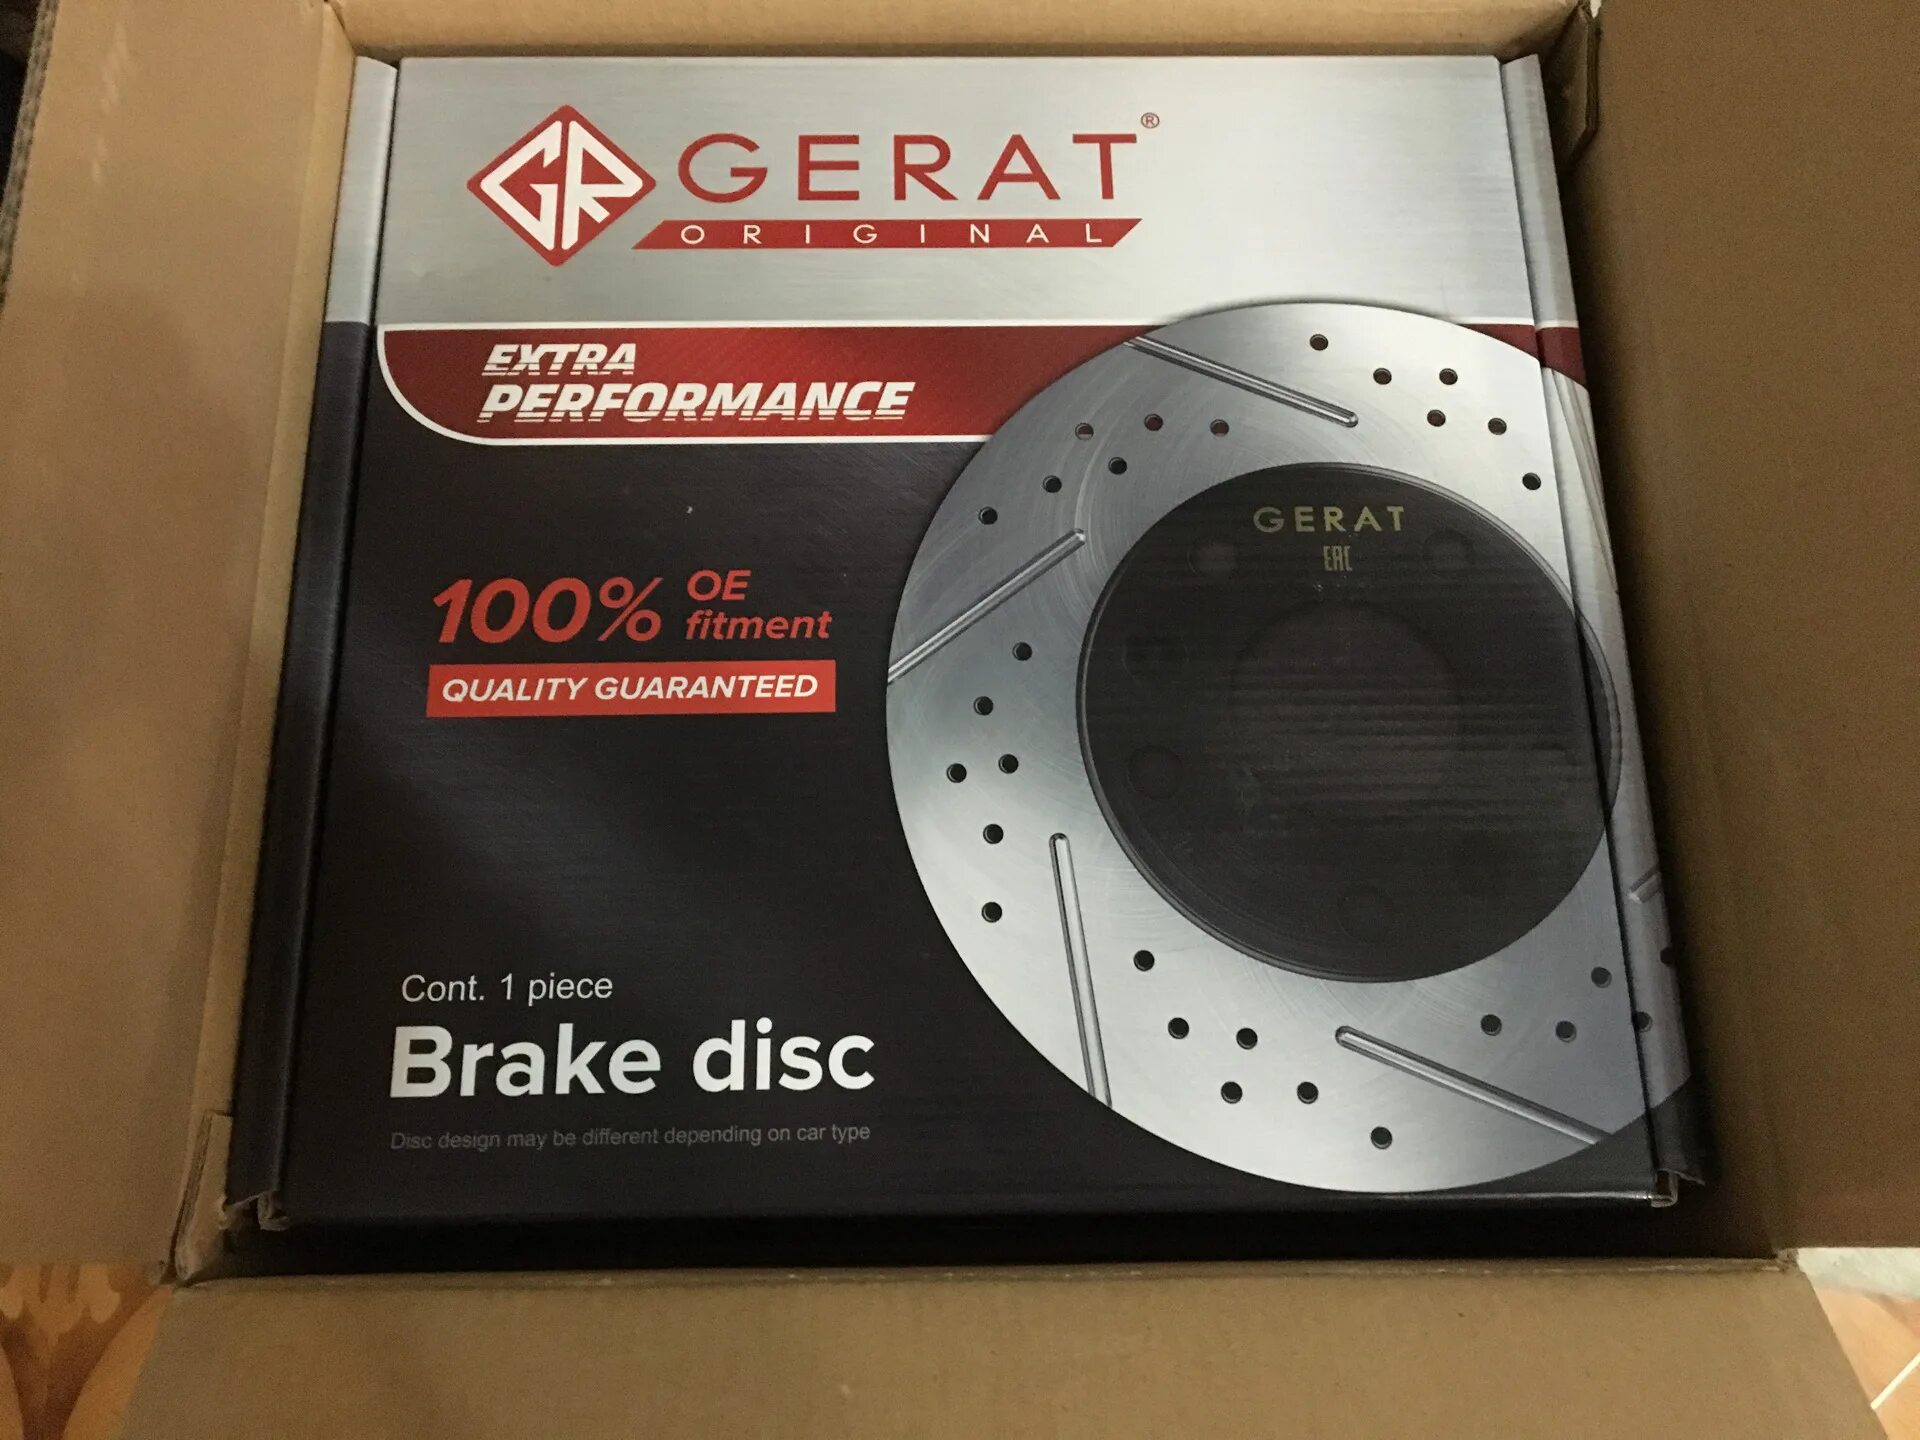 Тормозные диски герат отзывы. Тормозные диски Gerat. Gerat Premium тормозные. Patrol диски Gerat. Gerat dskf050.